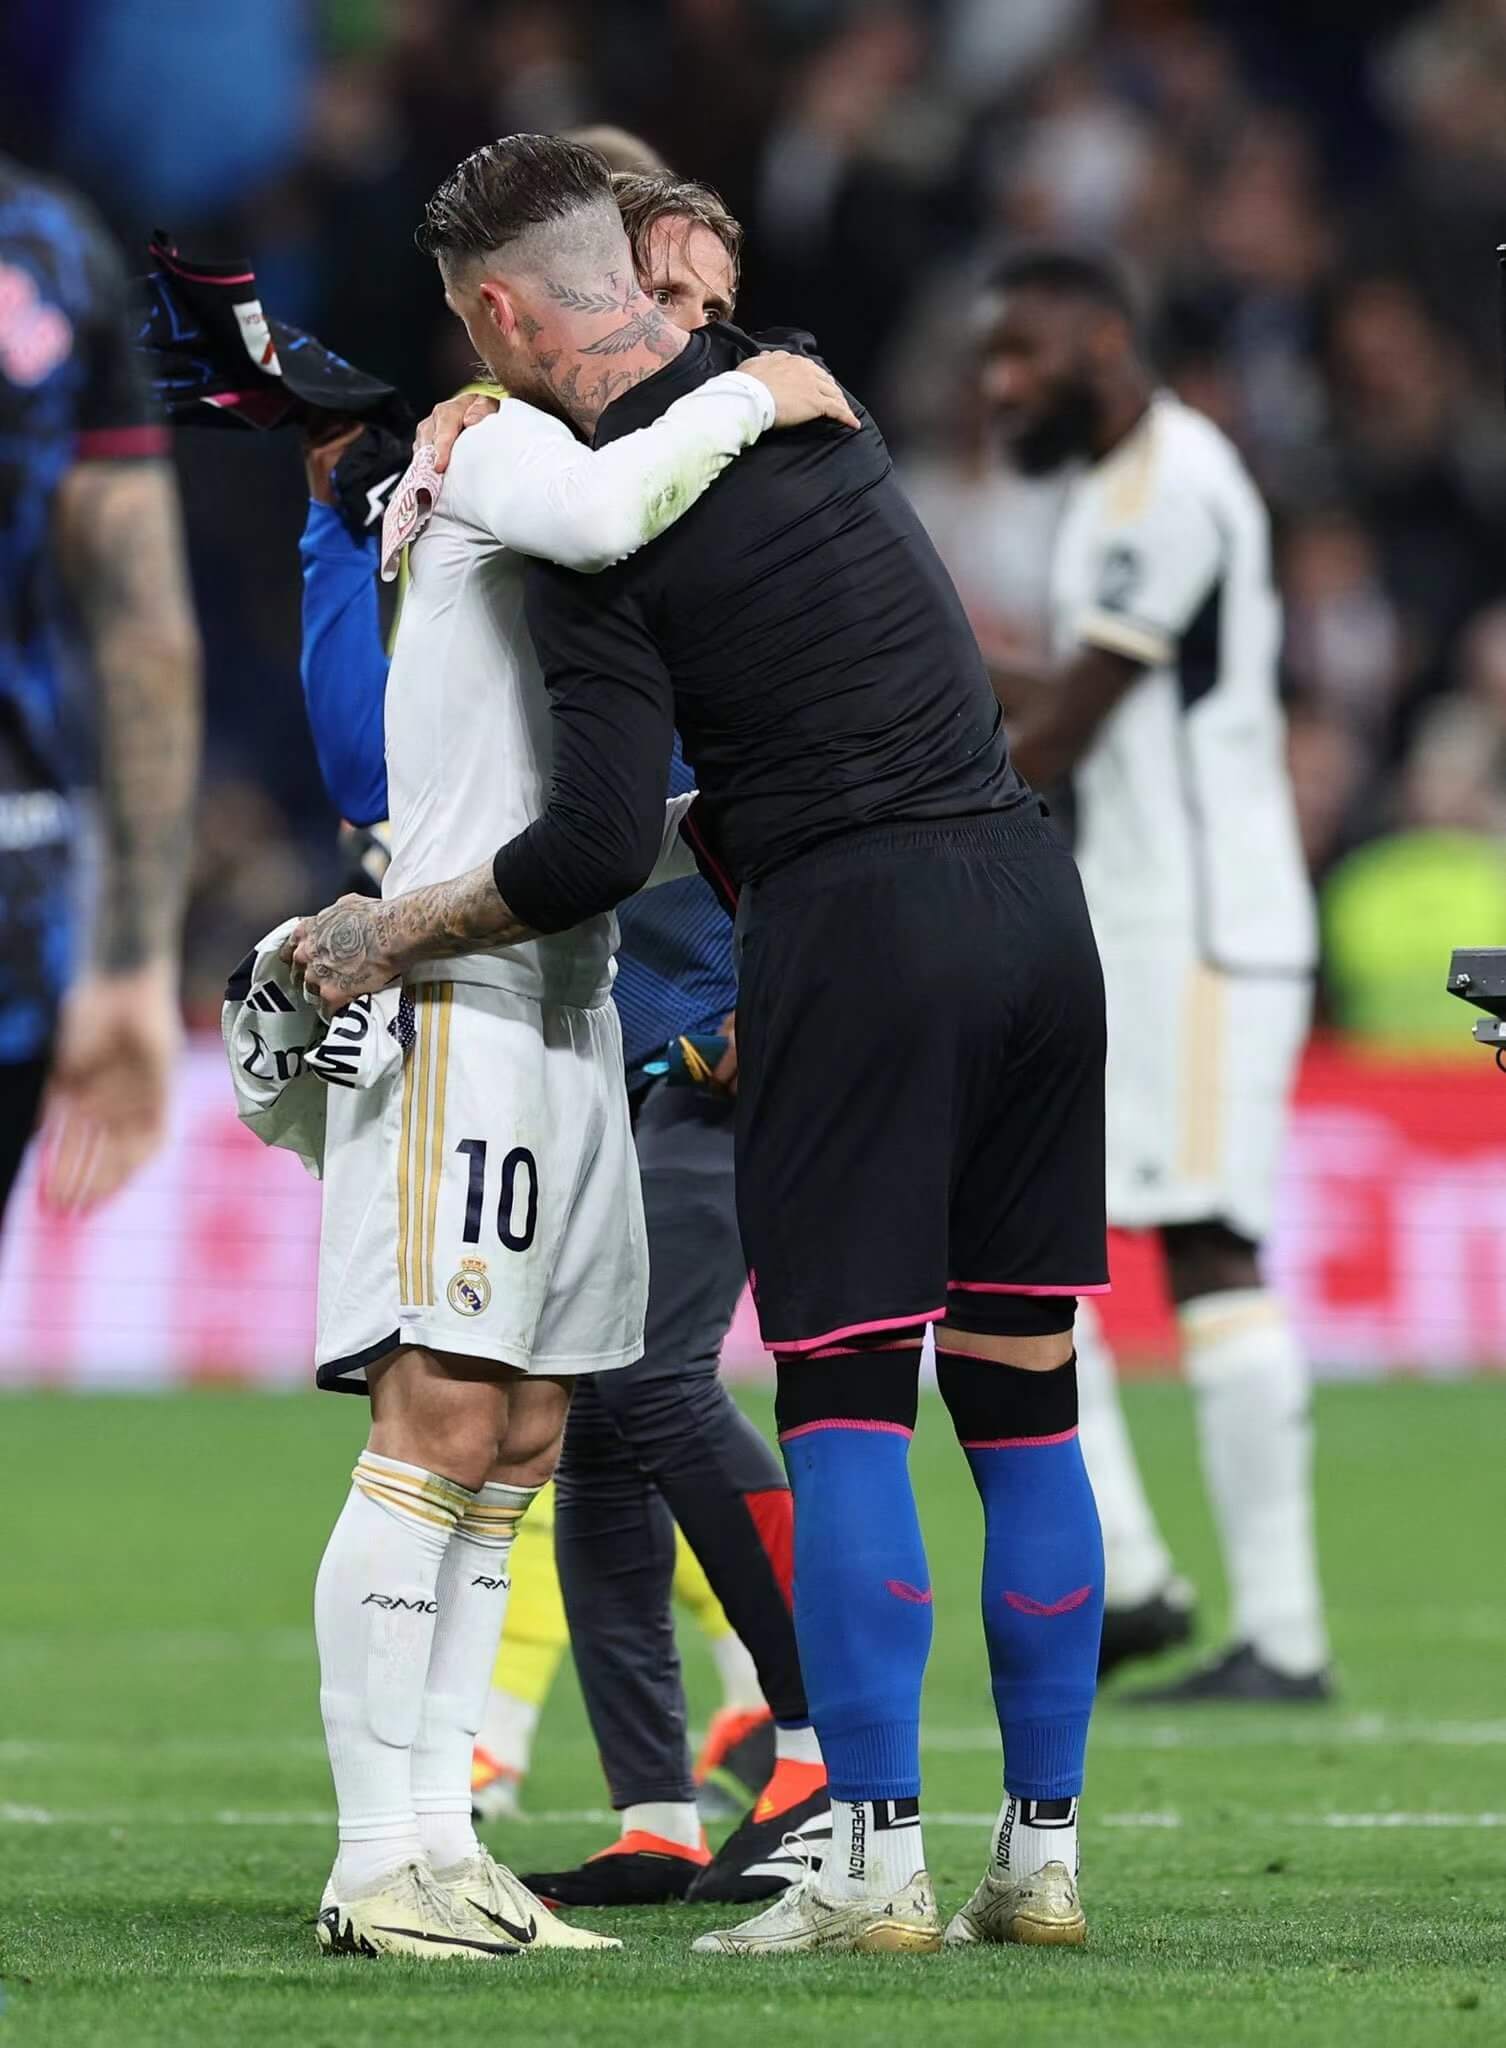 Vennskapet mellom Modric og Ramos, ekte kjærlighet på fotballbanen